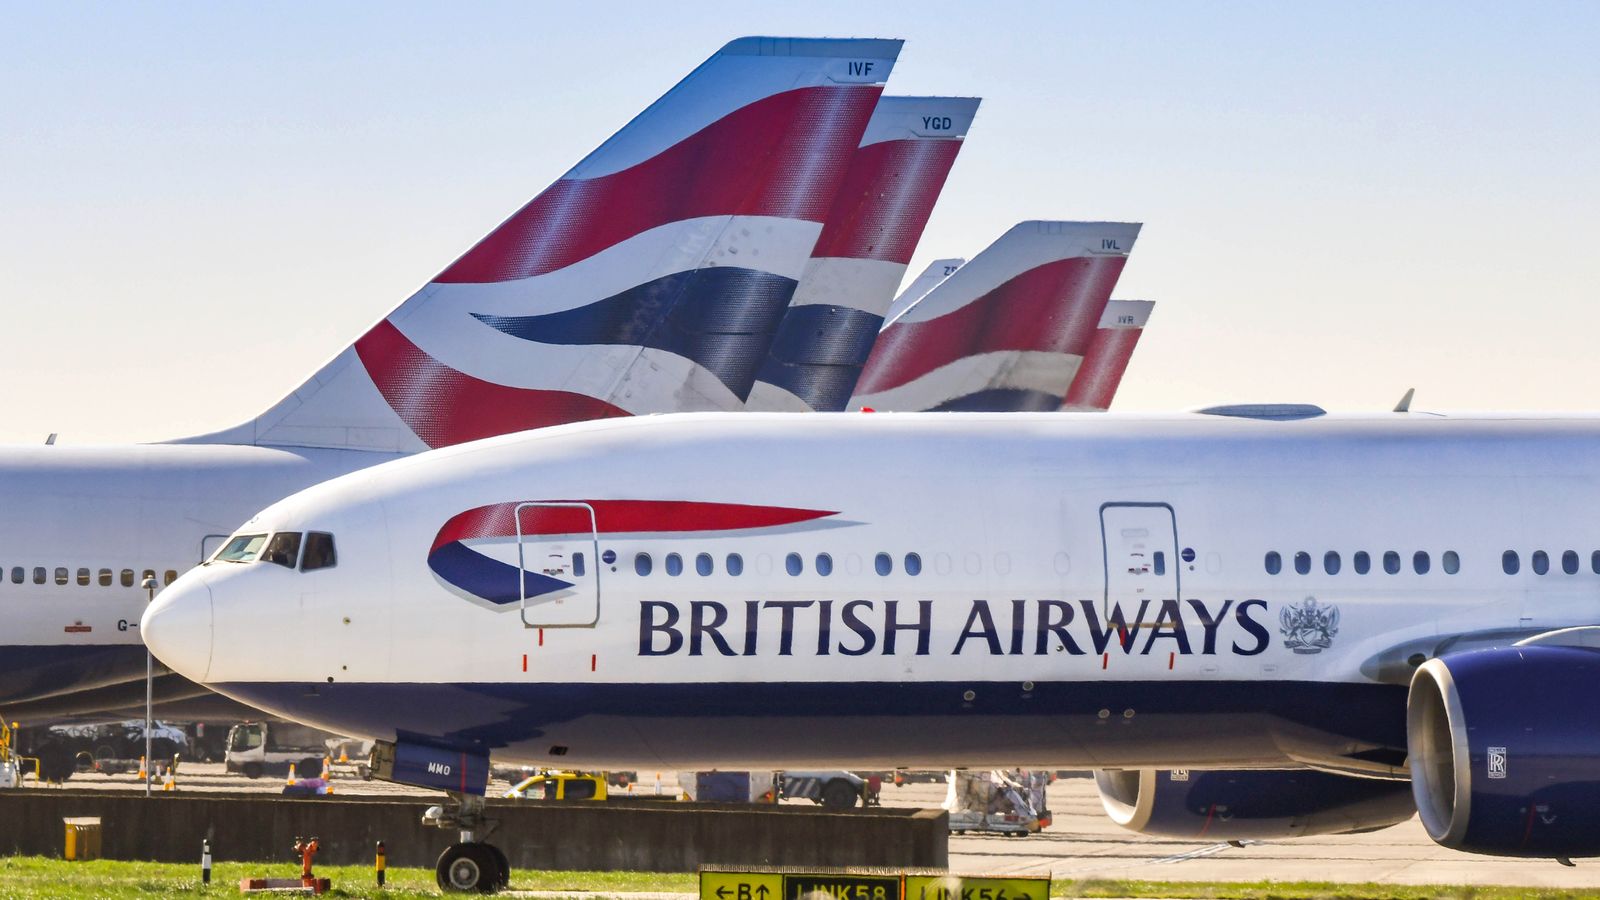 Der Check-in-Streik von British Airways wurde ausgesetzt, da die Fluggesellschaft bessere Löhne anbietet, sagen die Gewerkschaften |  Wirtschaftsnachrichten